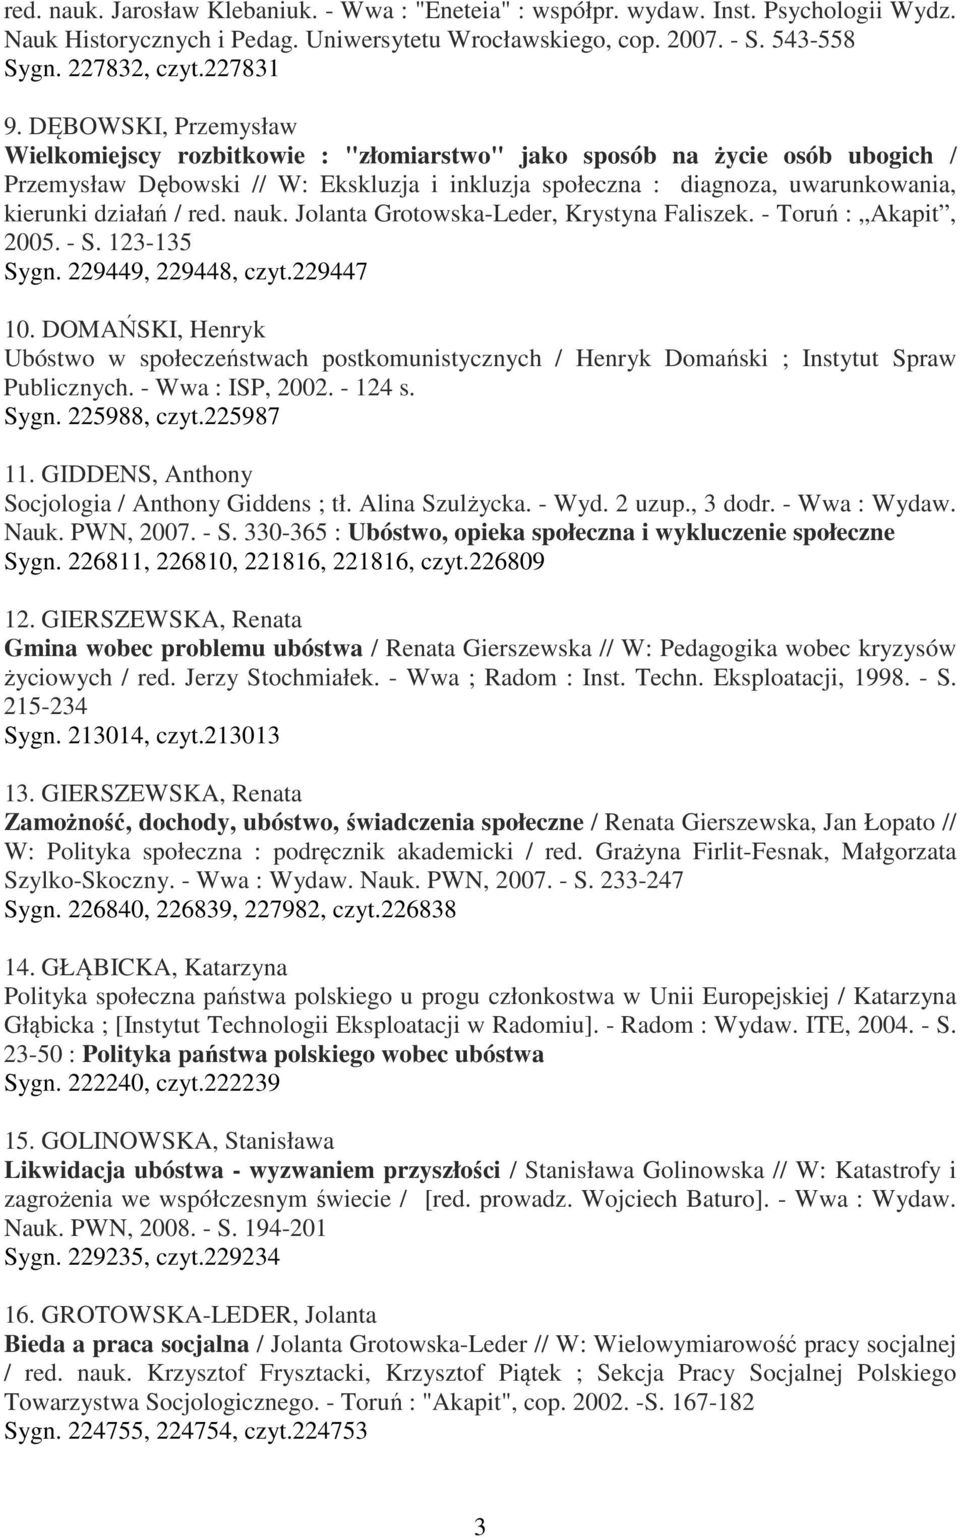 / red. nauk. Jolanta Grotowska-Leder, Krystyna Faliszek. - Toruń : Akapit, 2005. - S. 123-135 Sygn. 229449, 229448, czyt.229447 10.